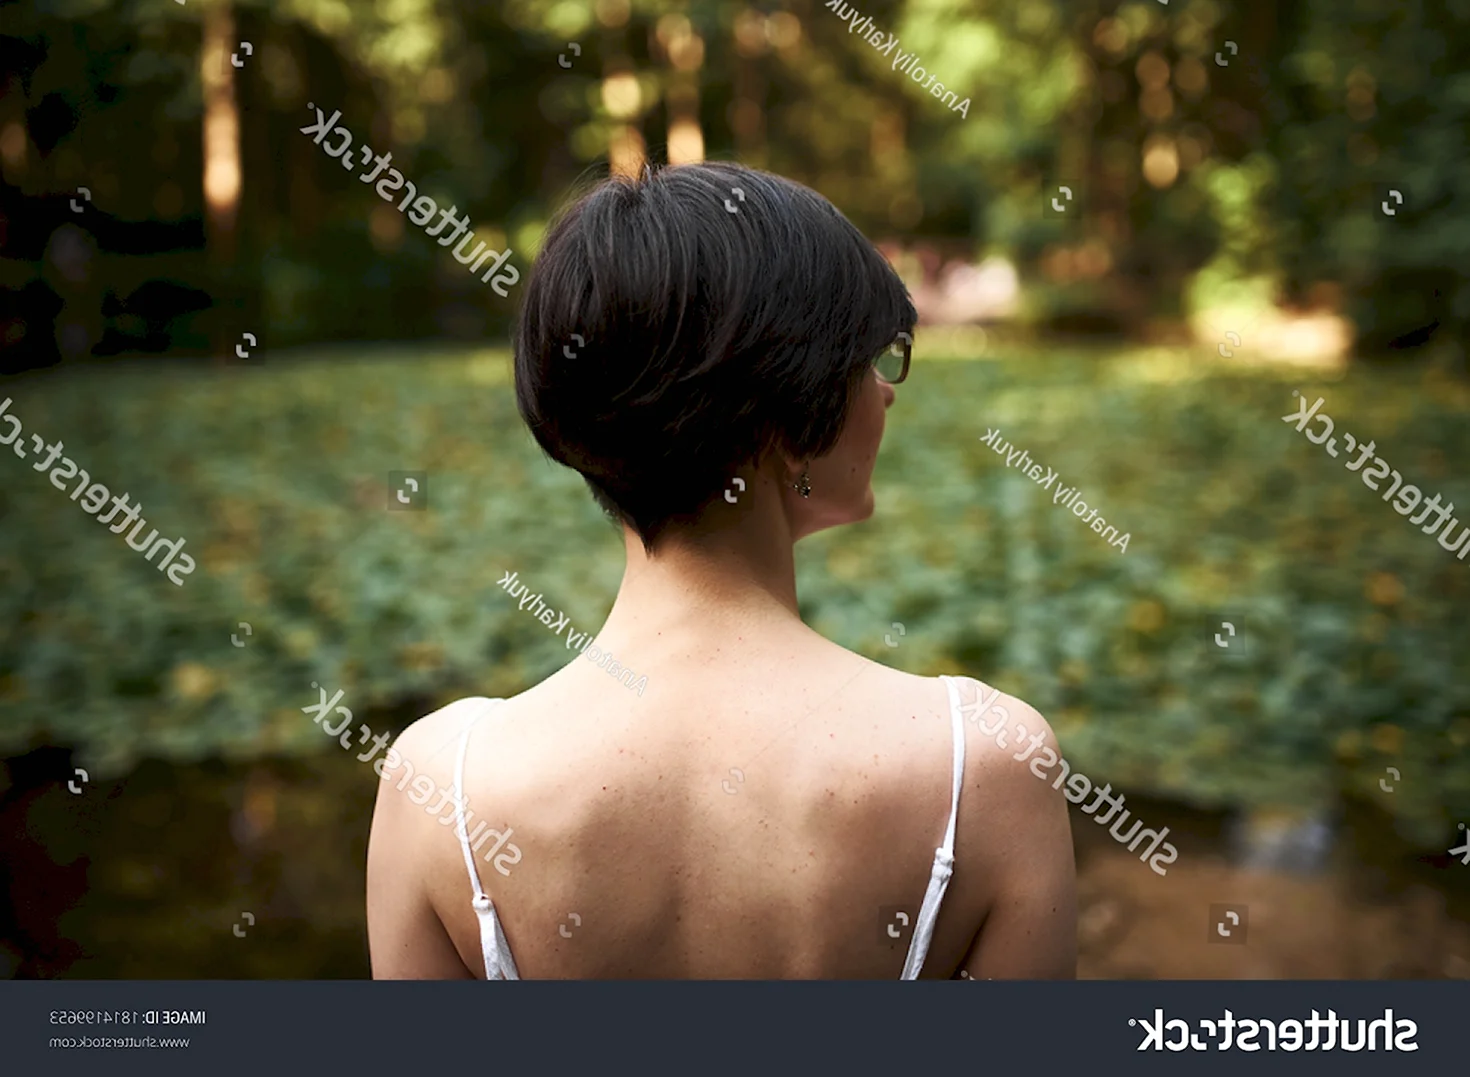 Женщина с короткой стрижкой со спины голая